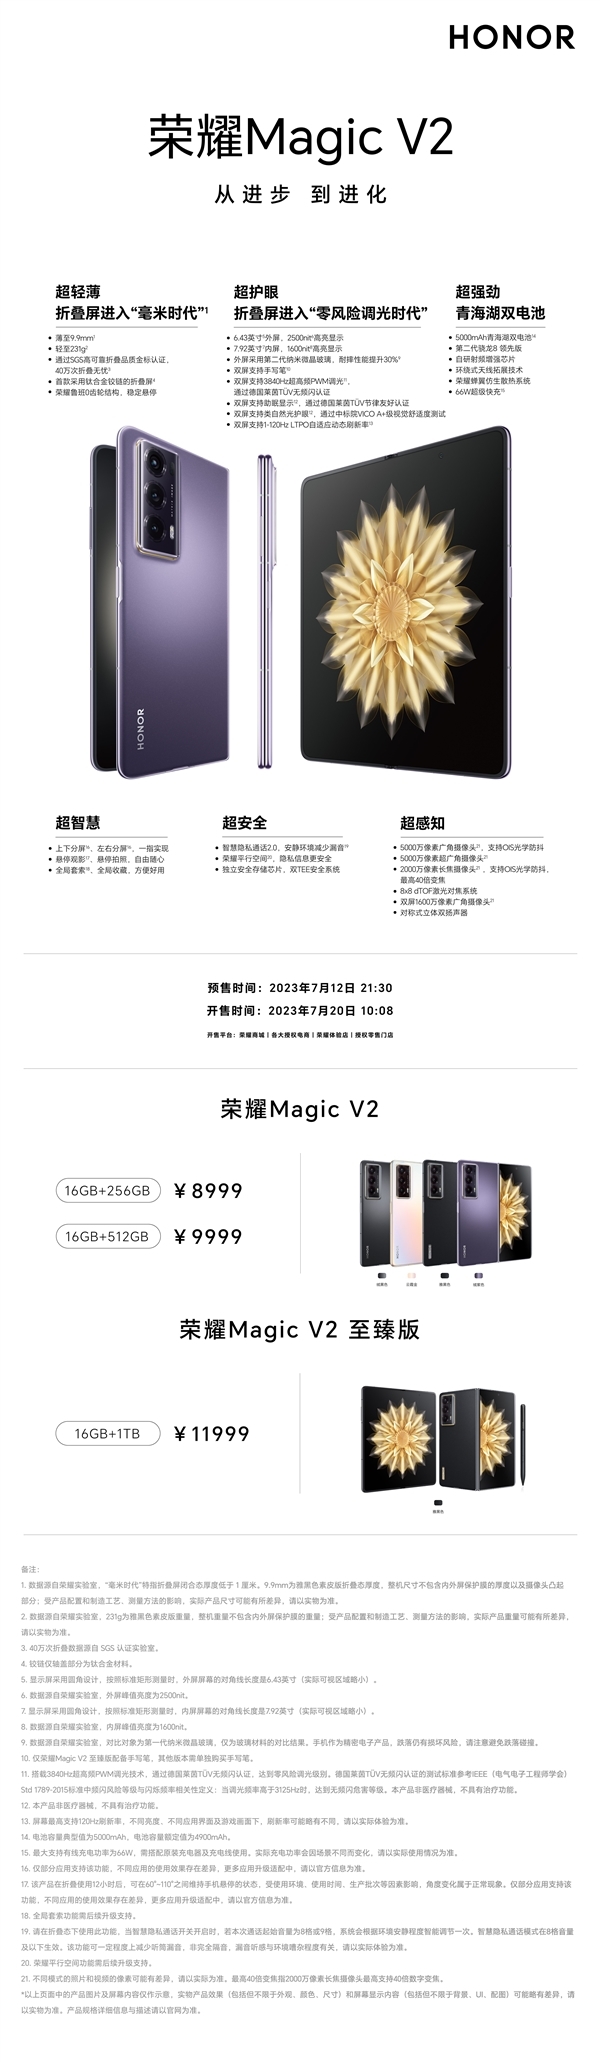 最火国产手机诞生！荣耀Magic V2打破四大电商平台近一年所有安卓手机同期预售纪录